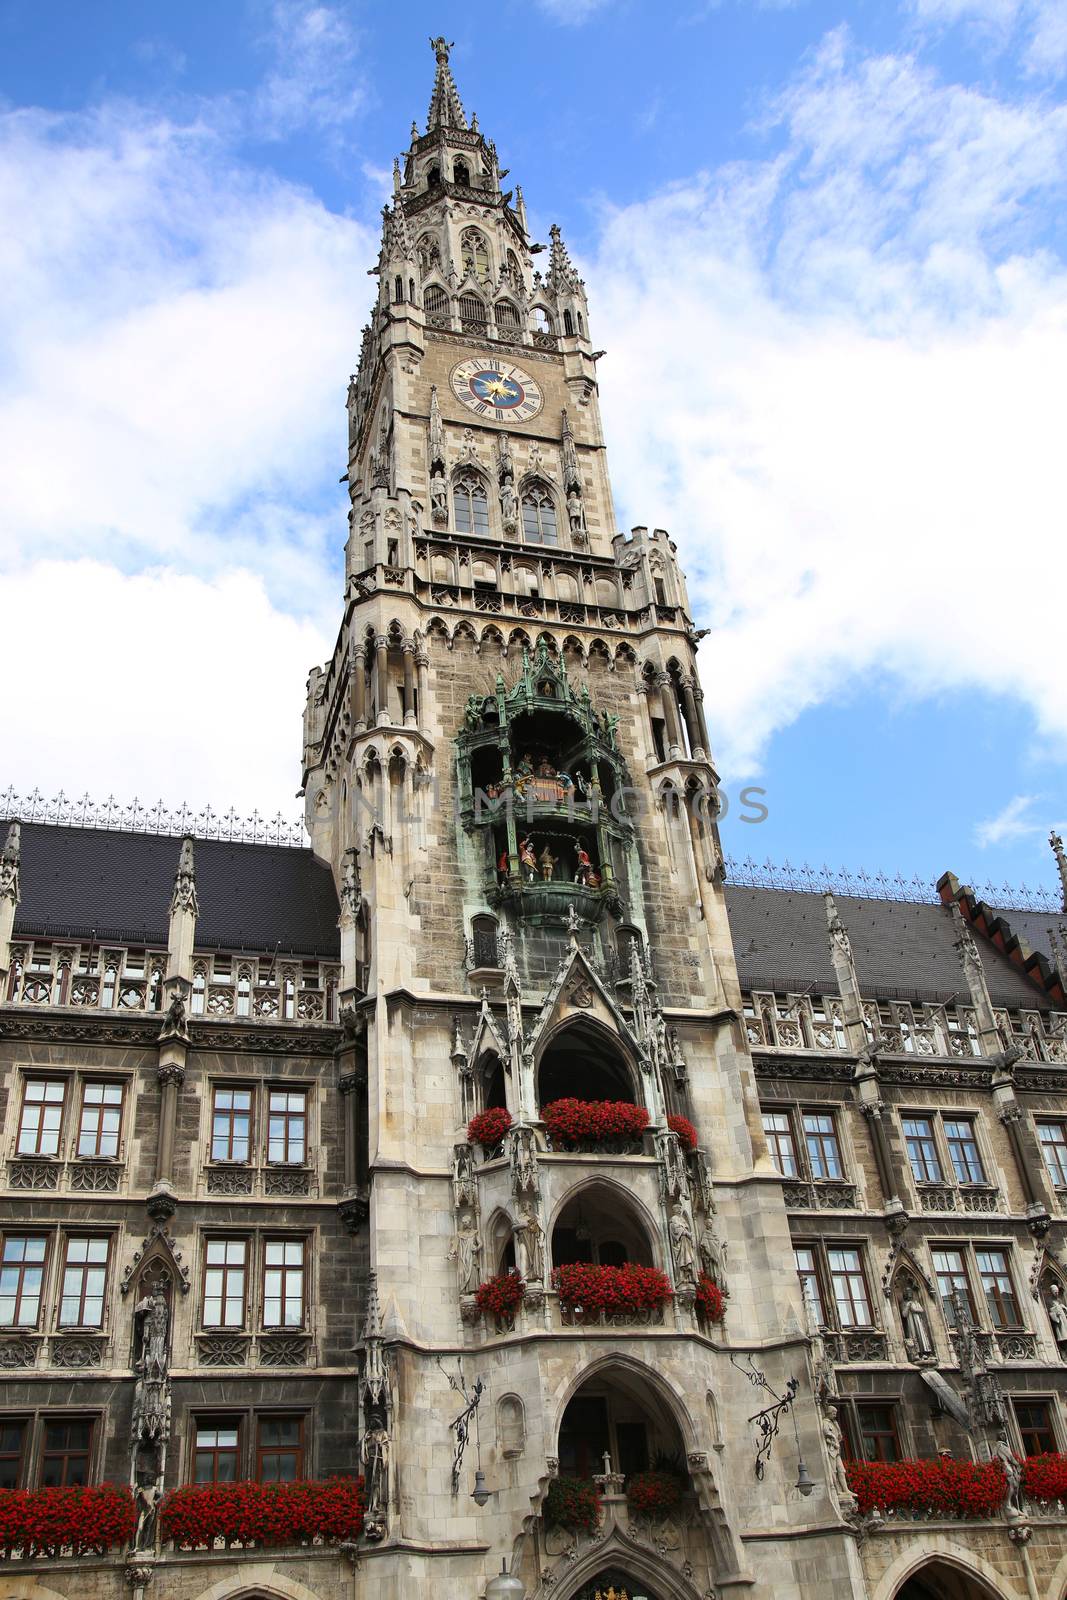 Town Hall (Rathaus) in Marienplatz, Munich, Germany 